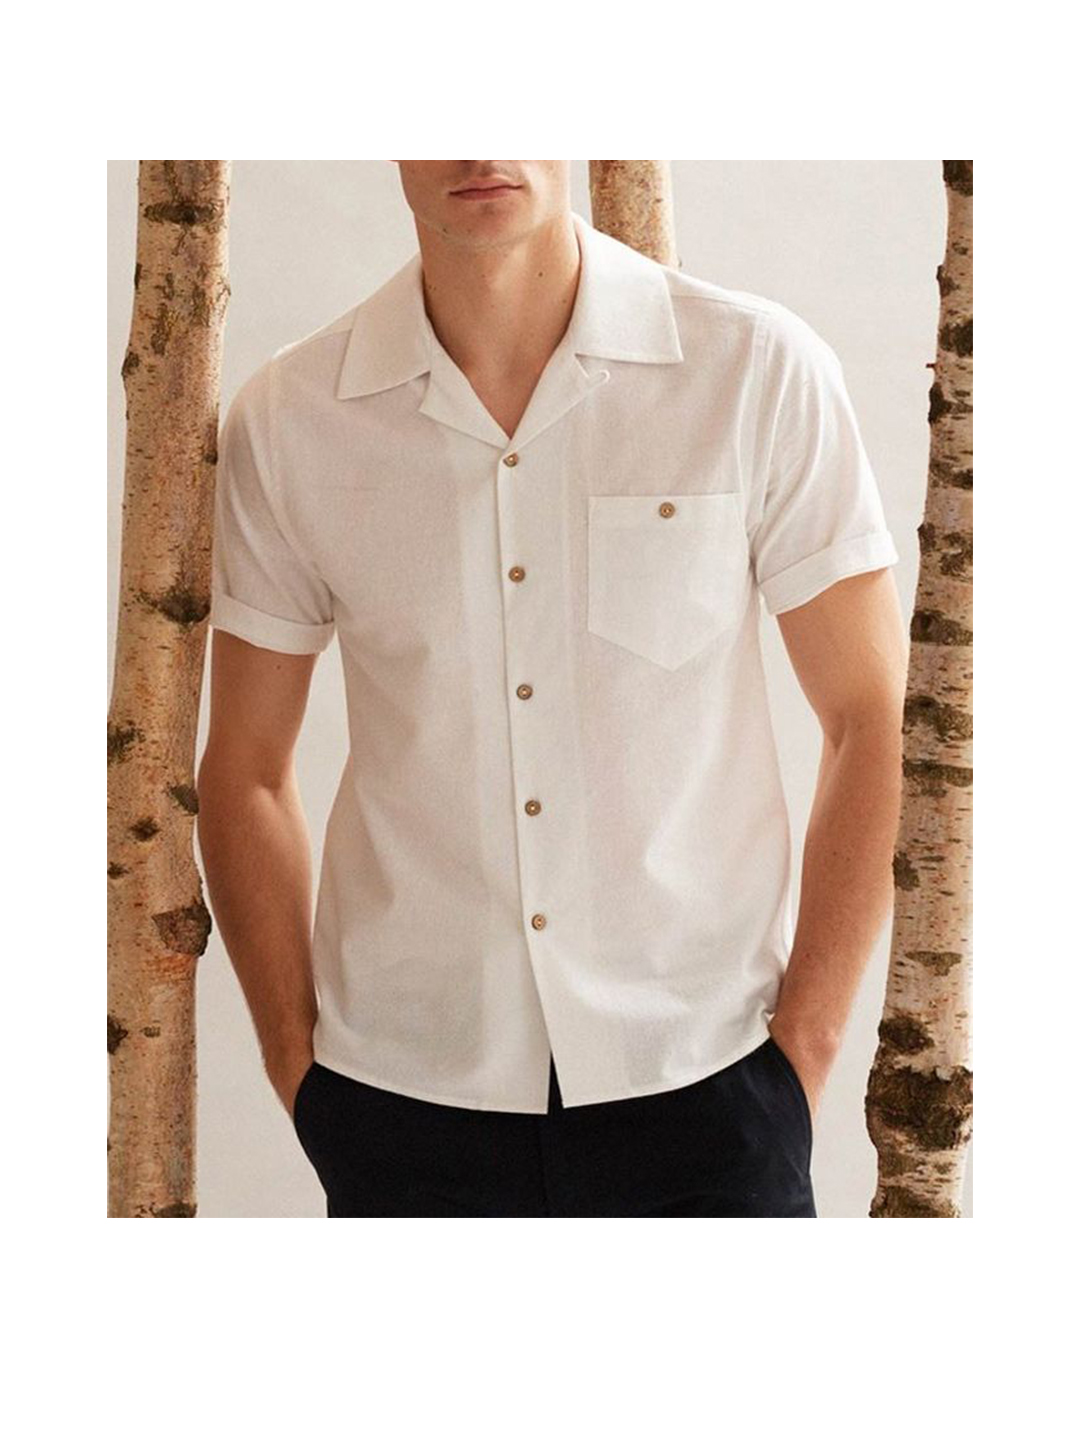 Men's Dotson Faux Linen Solid Color Shirt-poisonstreetwear.com